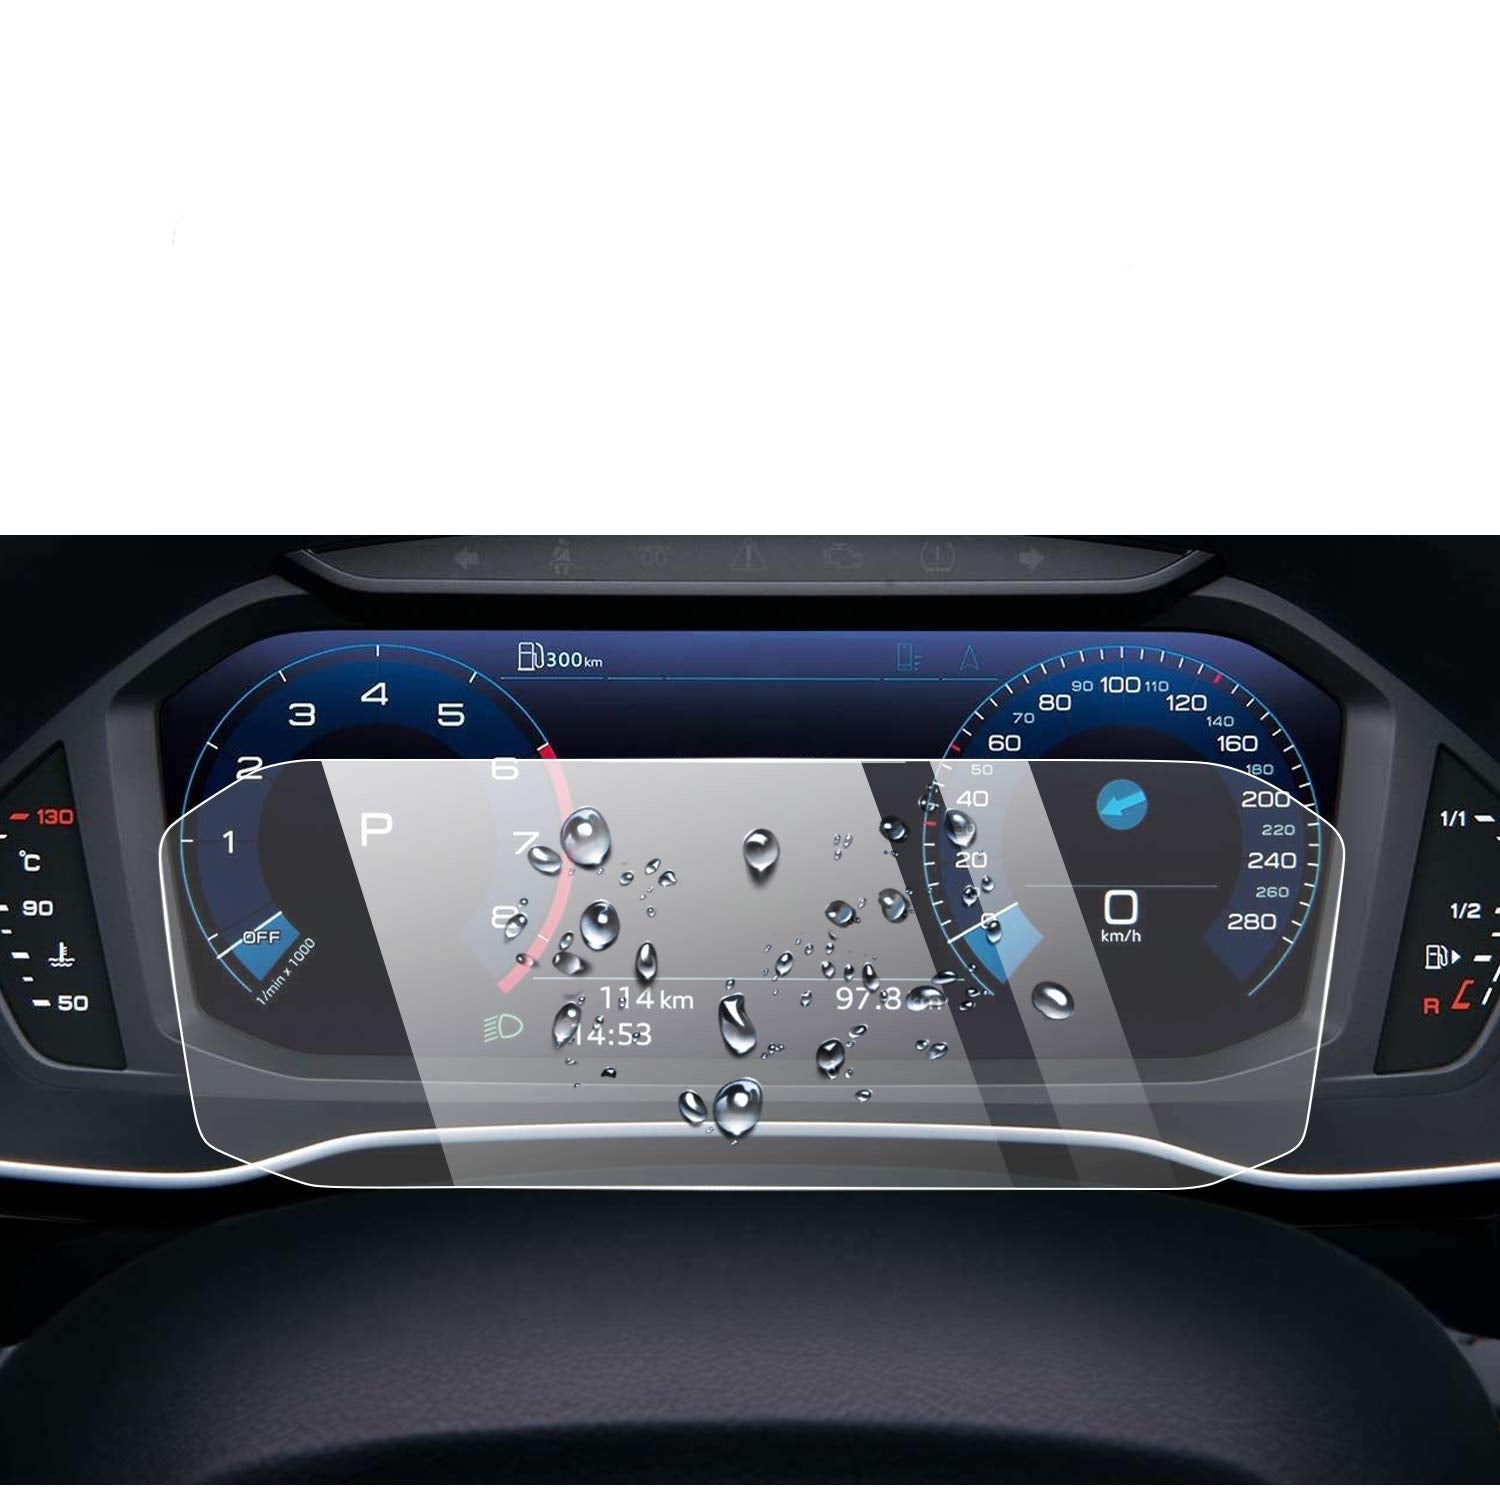 Audi Q3 F3 Screen Protector 2019+ - LFOTPP Car Accessories